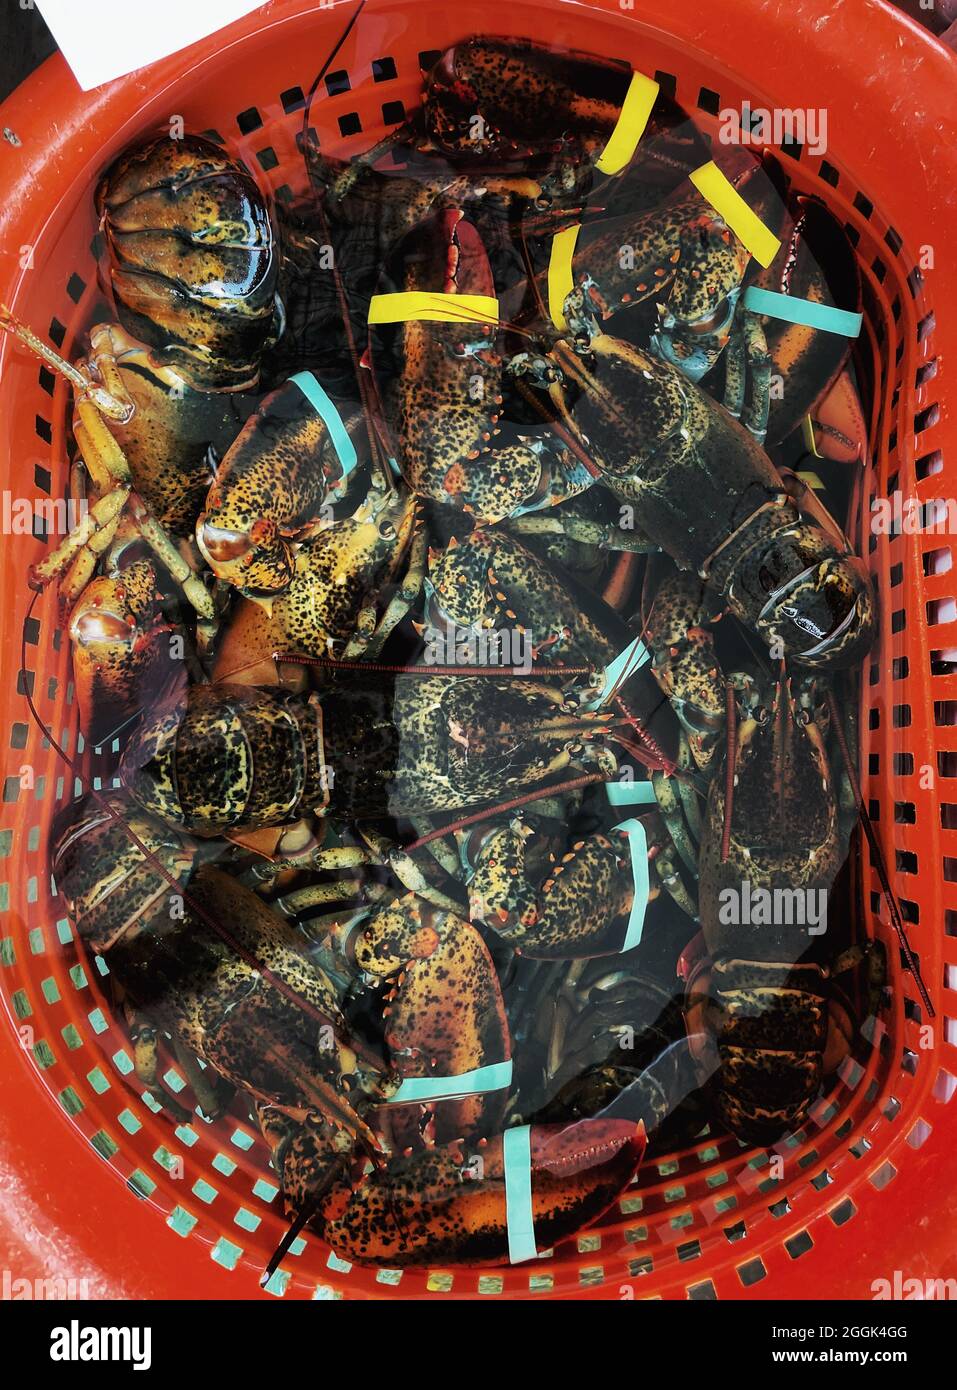 In Perry’s Lobster Shack, einer Baracke am Wasser, werden Hummer und Meeresfrüchte serviert. Stockfoto